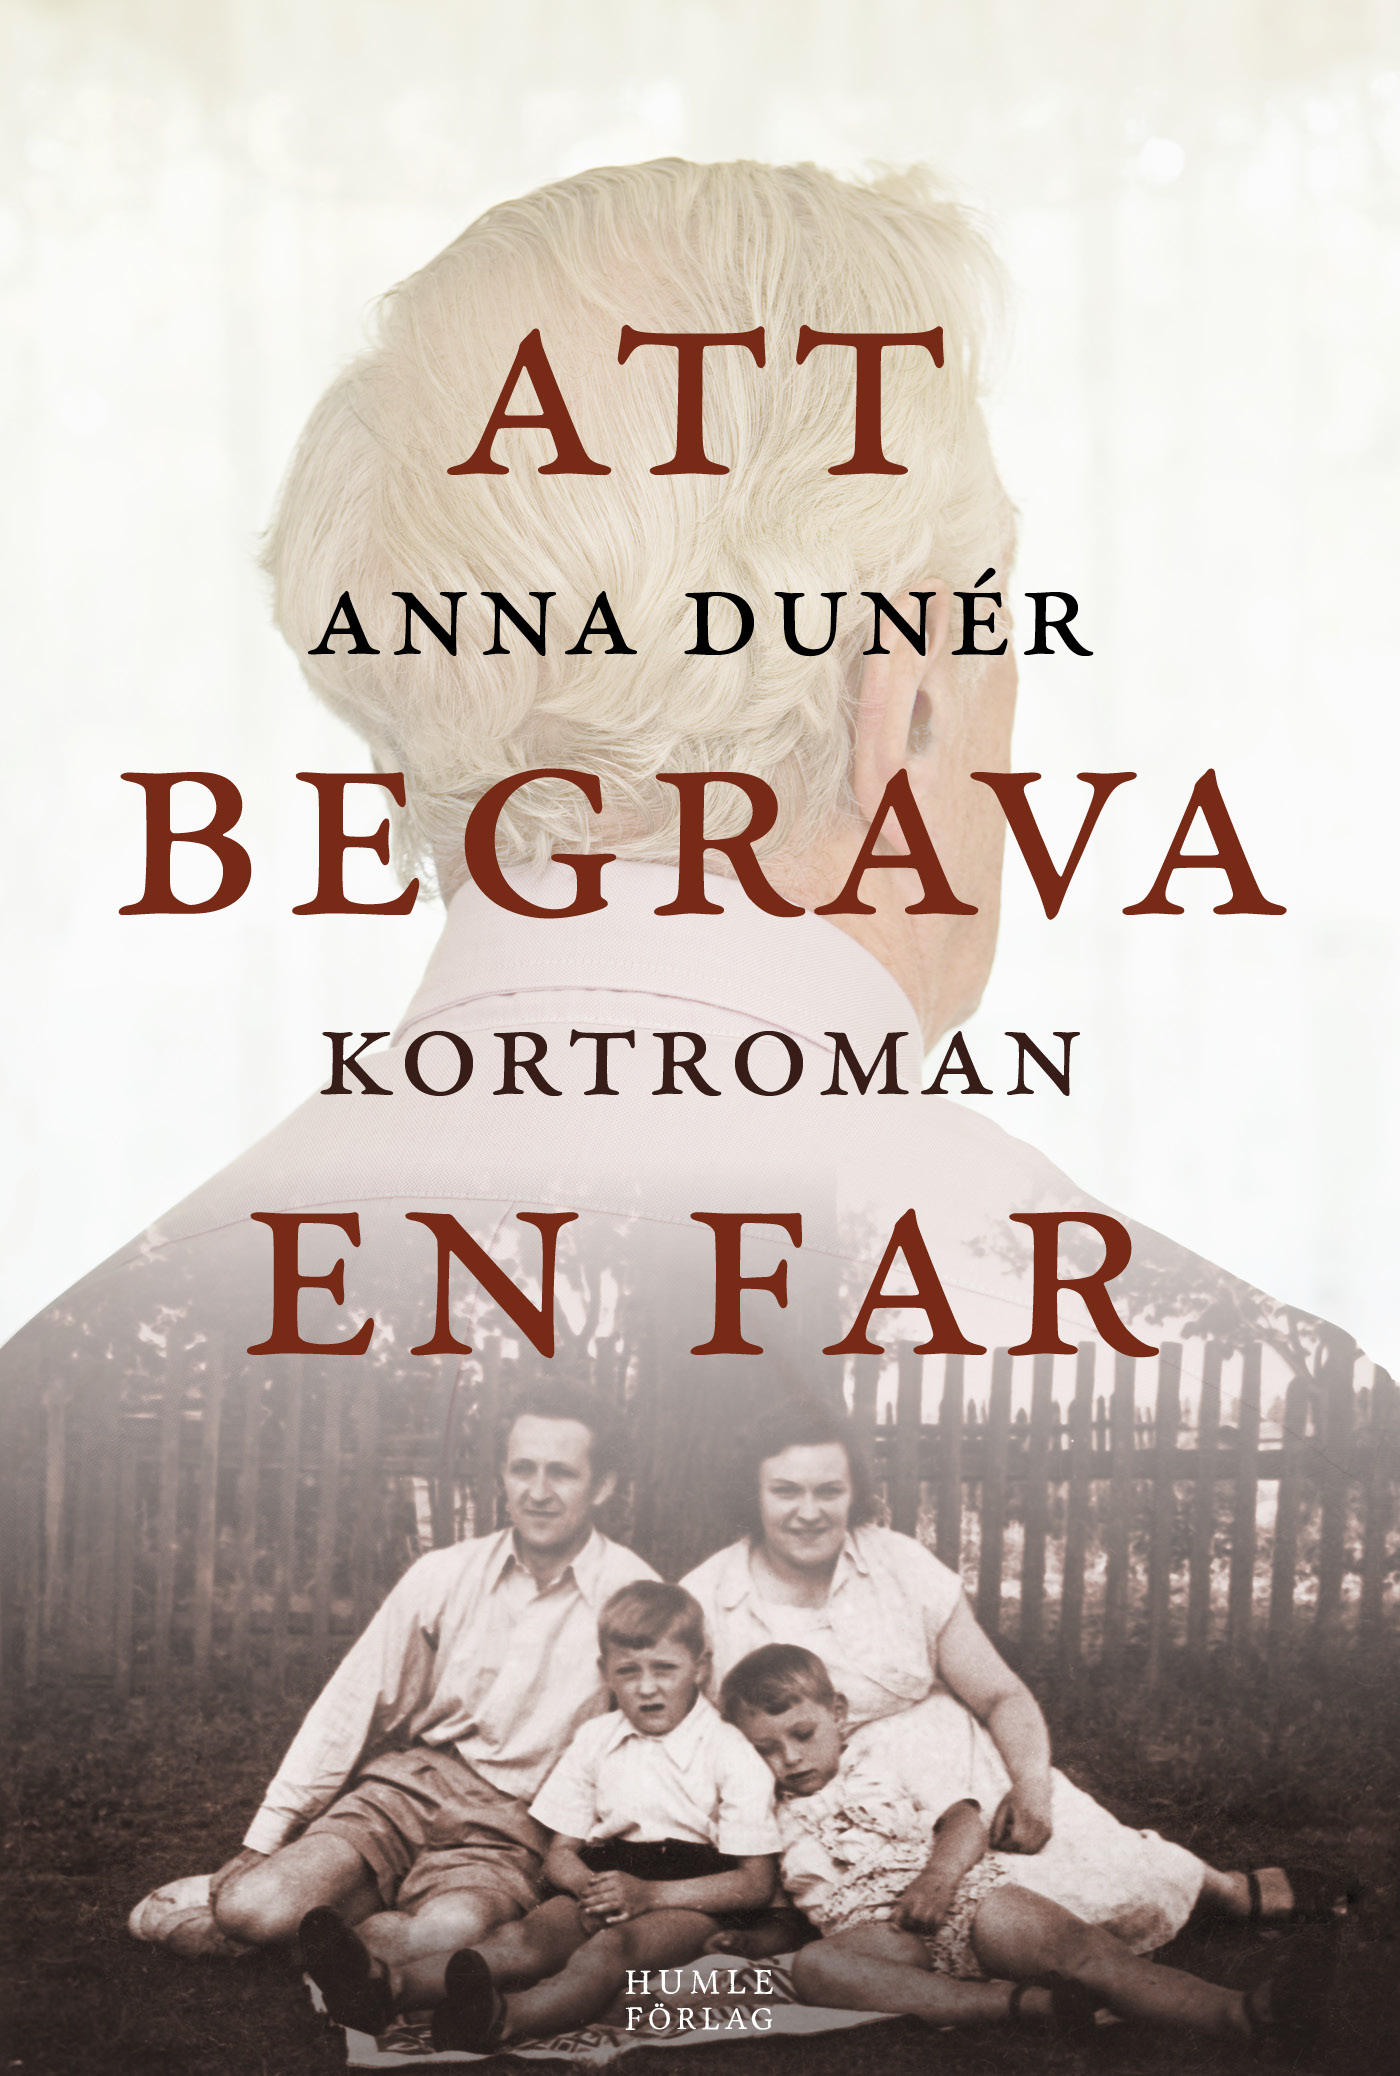 Omslaget till Att begrava en far av Anna Dunér.